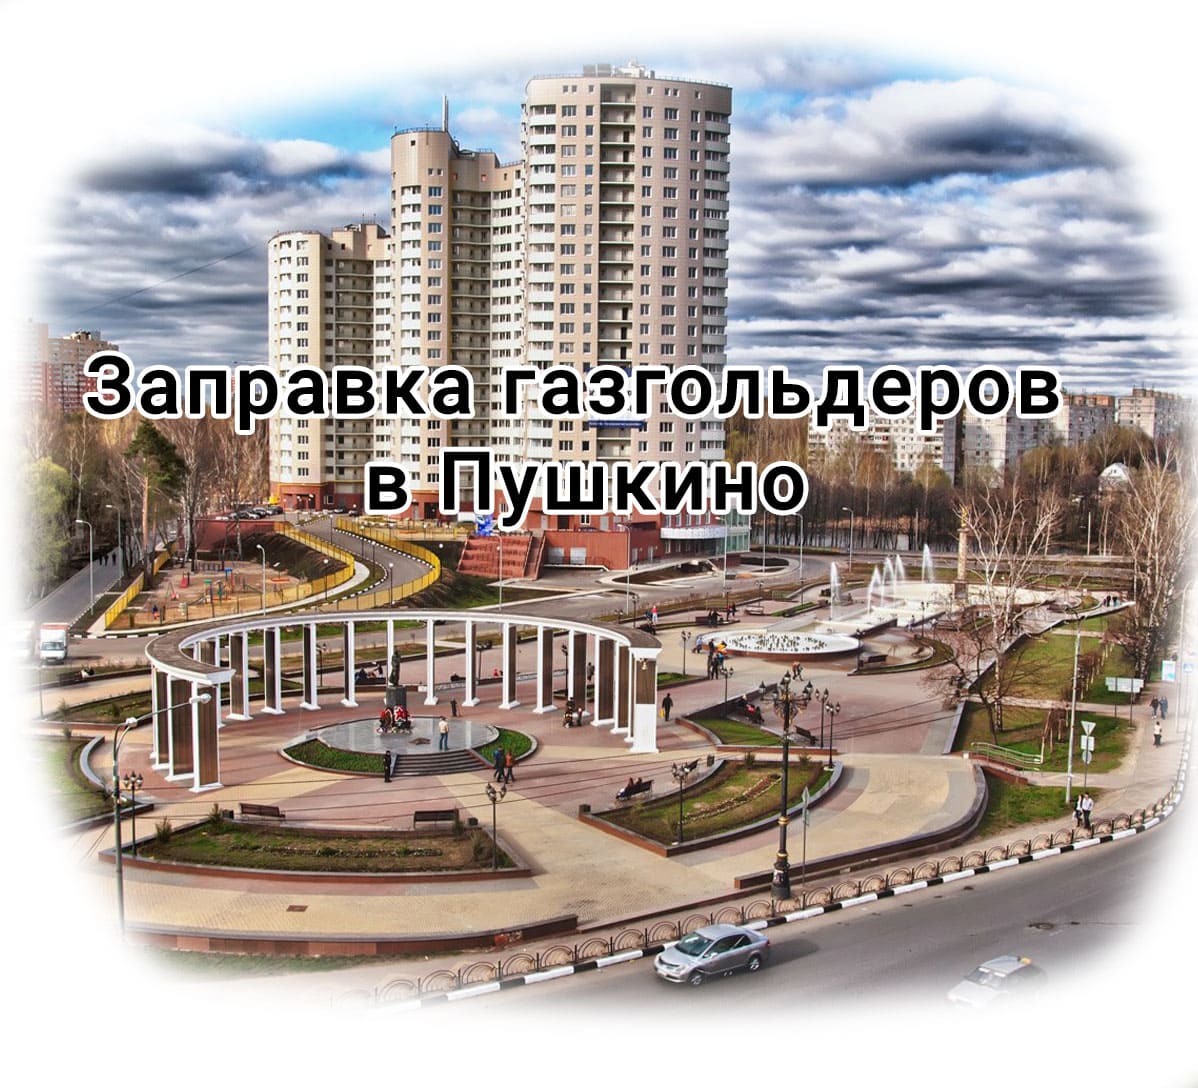 Заправка газгольдера в Пушкино